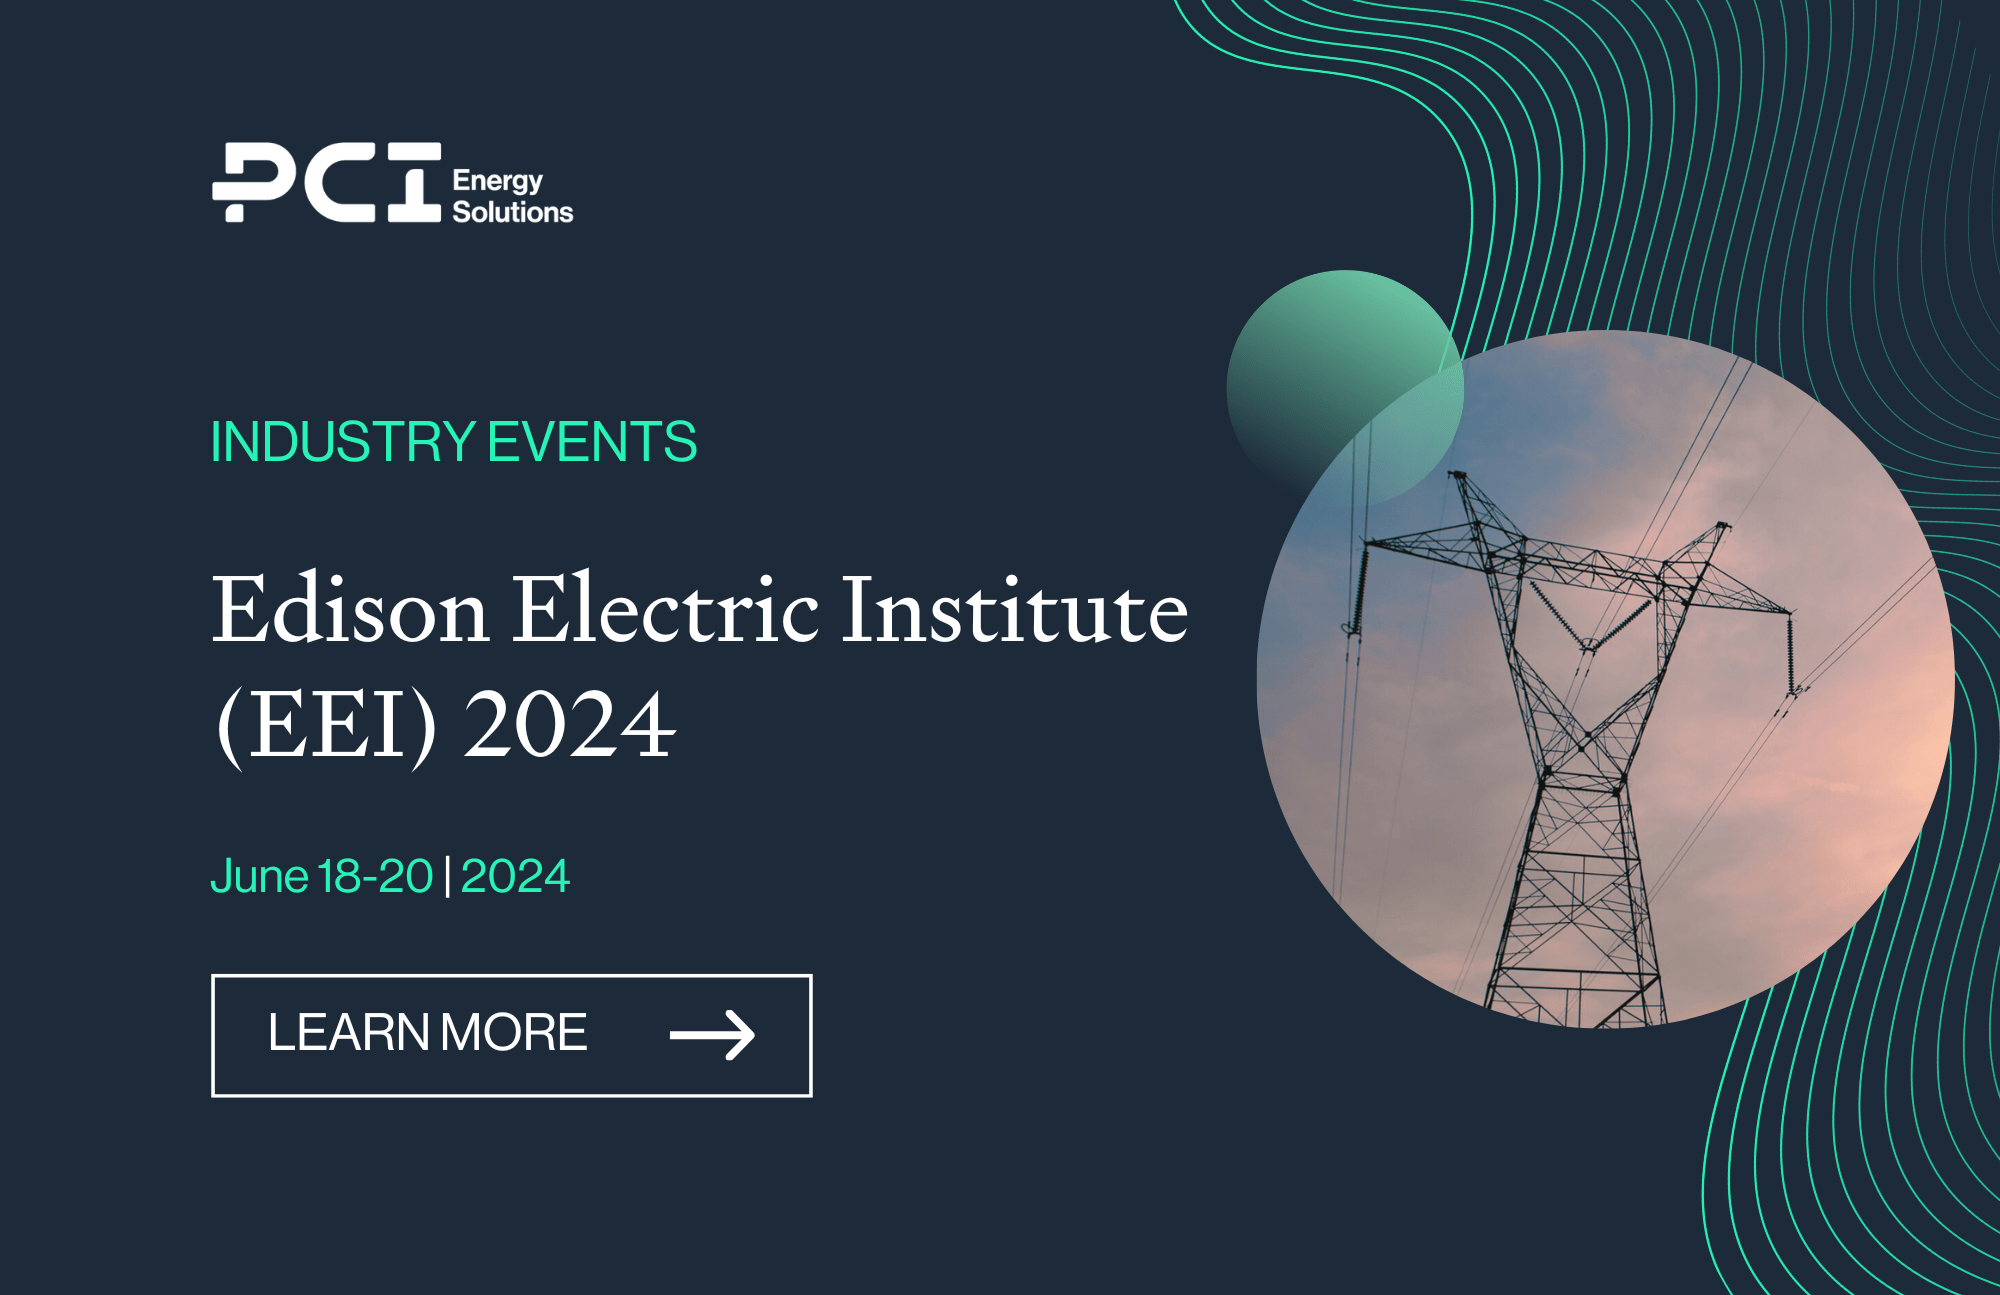 Edison Electric Institute (EEI) 2024